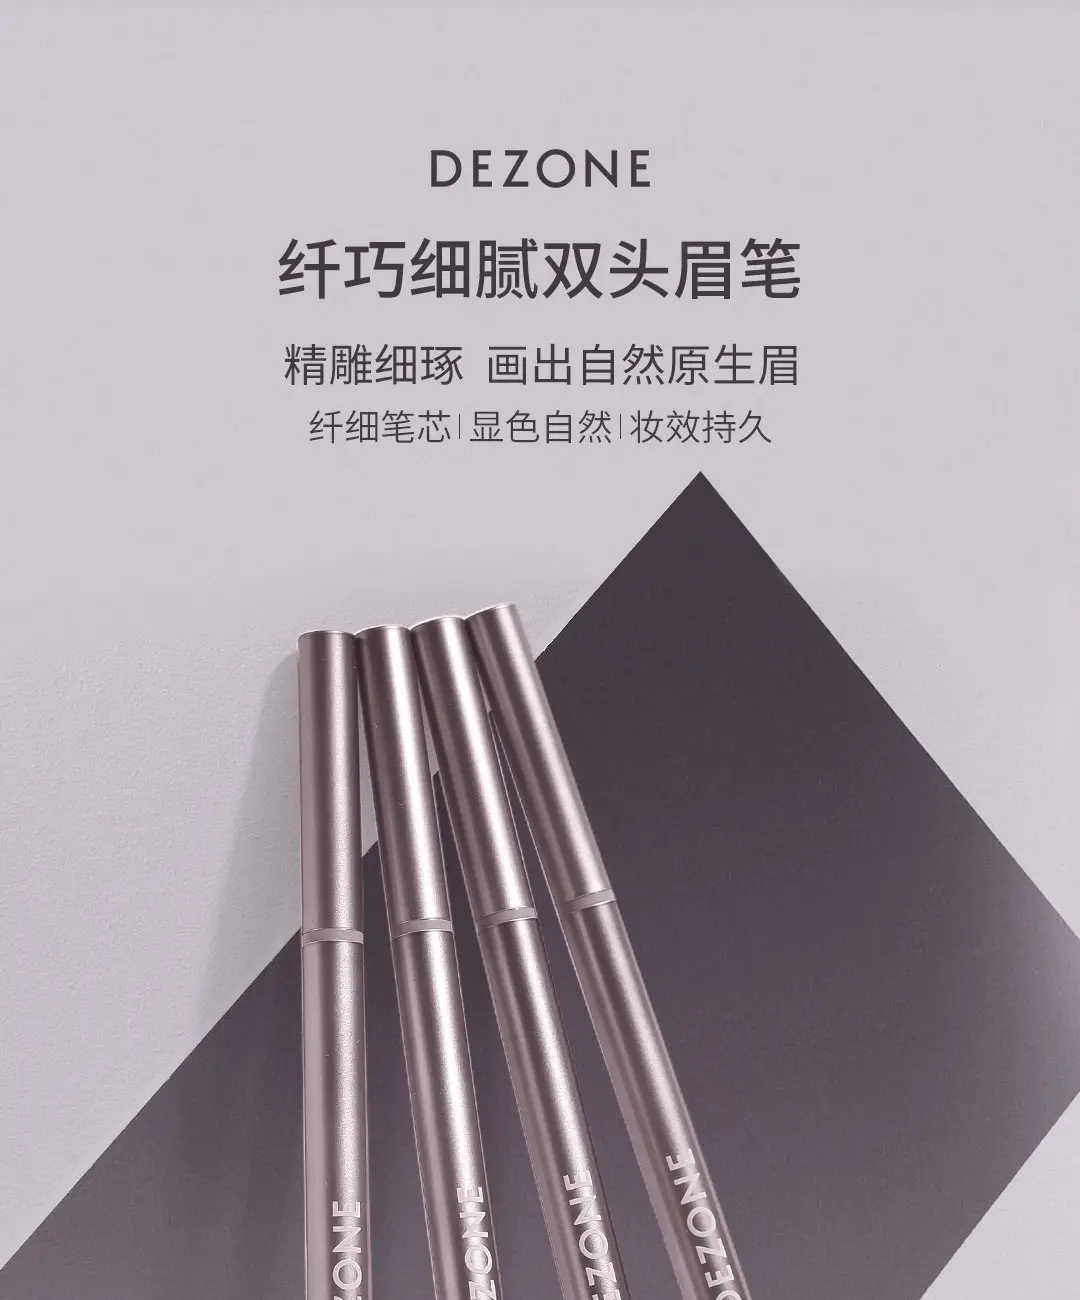 Xiaomi Mijia Youpin DEZONE тонкий и нежный двойной карандаш для бровей натуральный цвет стойкий макияж